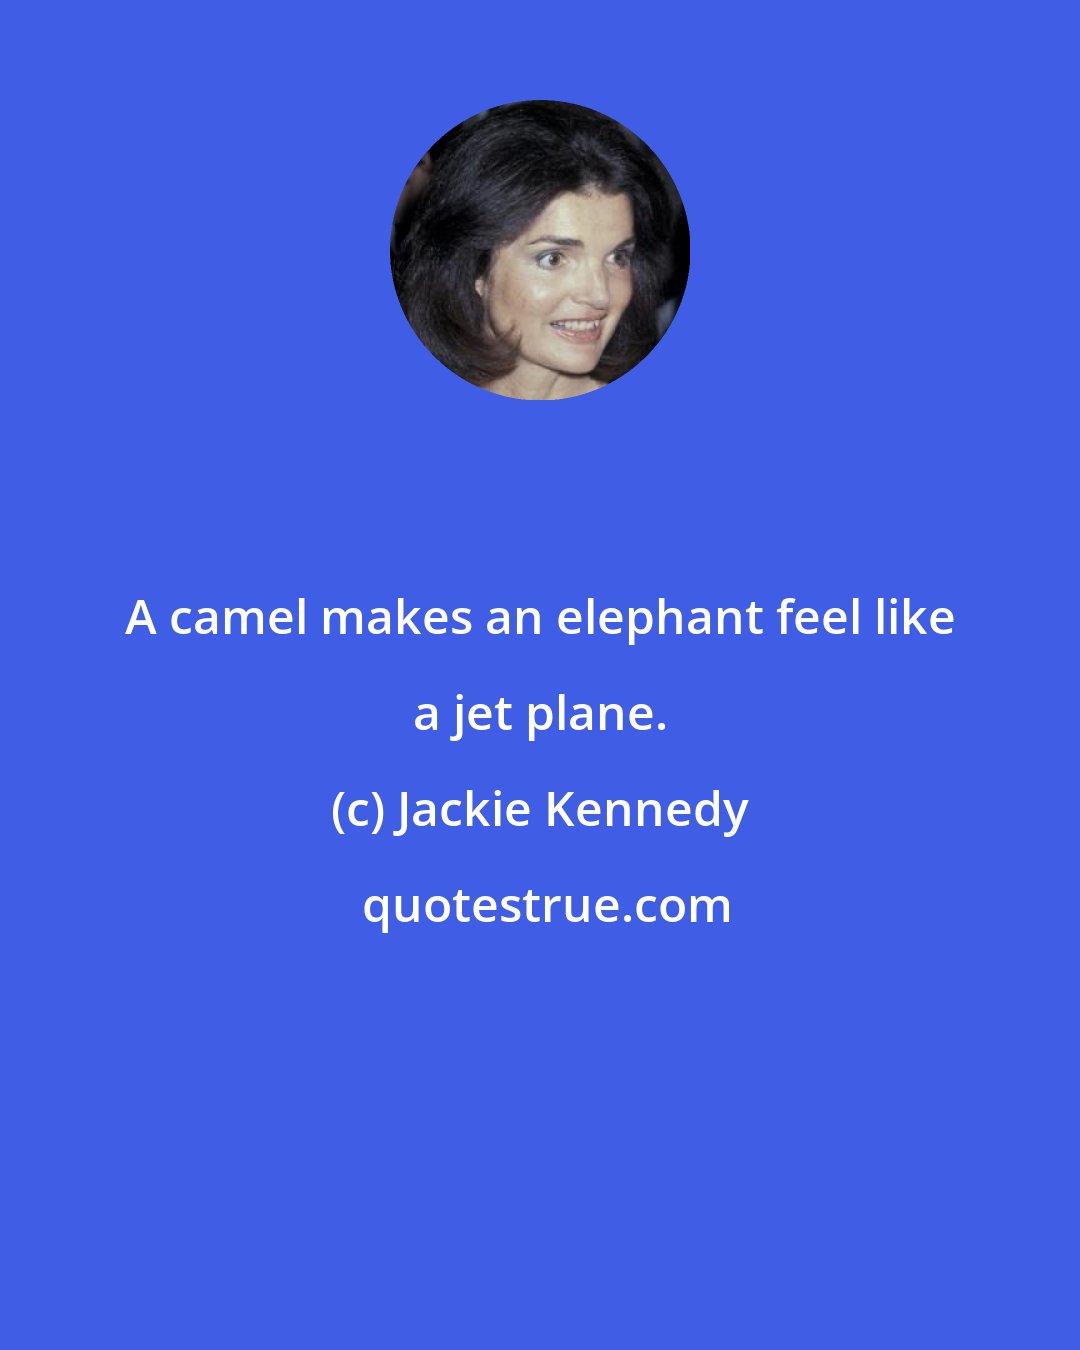 Jackie Kennedy: A camel makes an elephant feel like a jet plane.